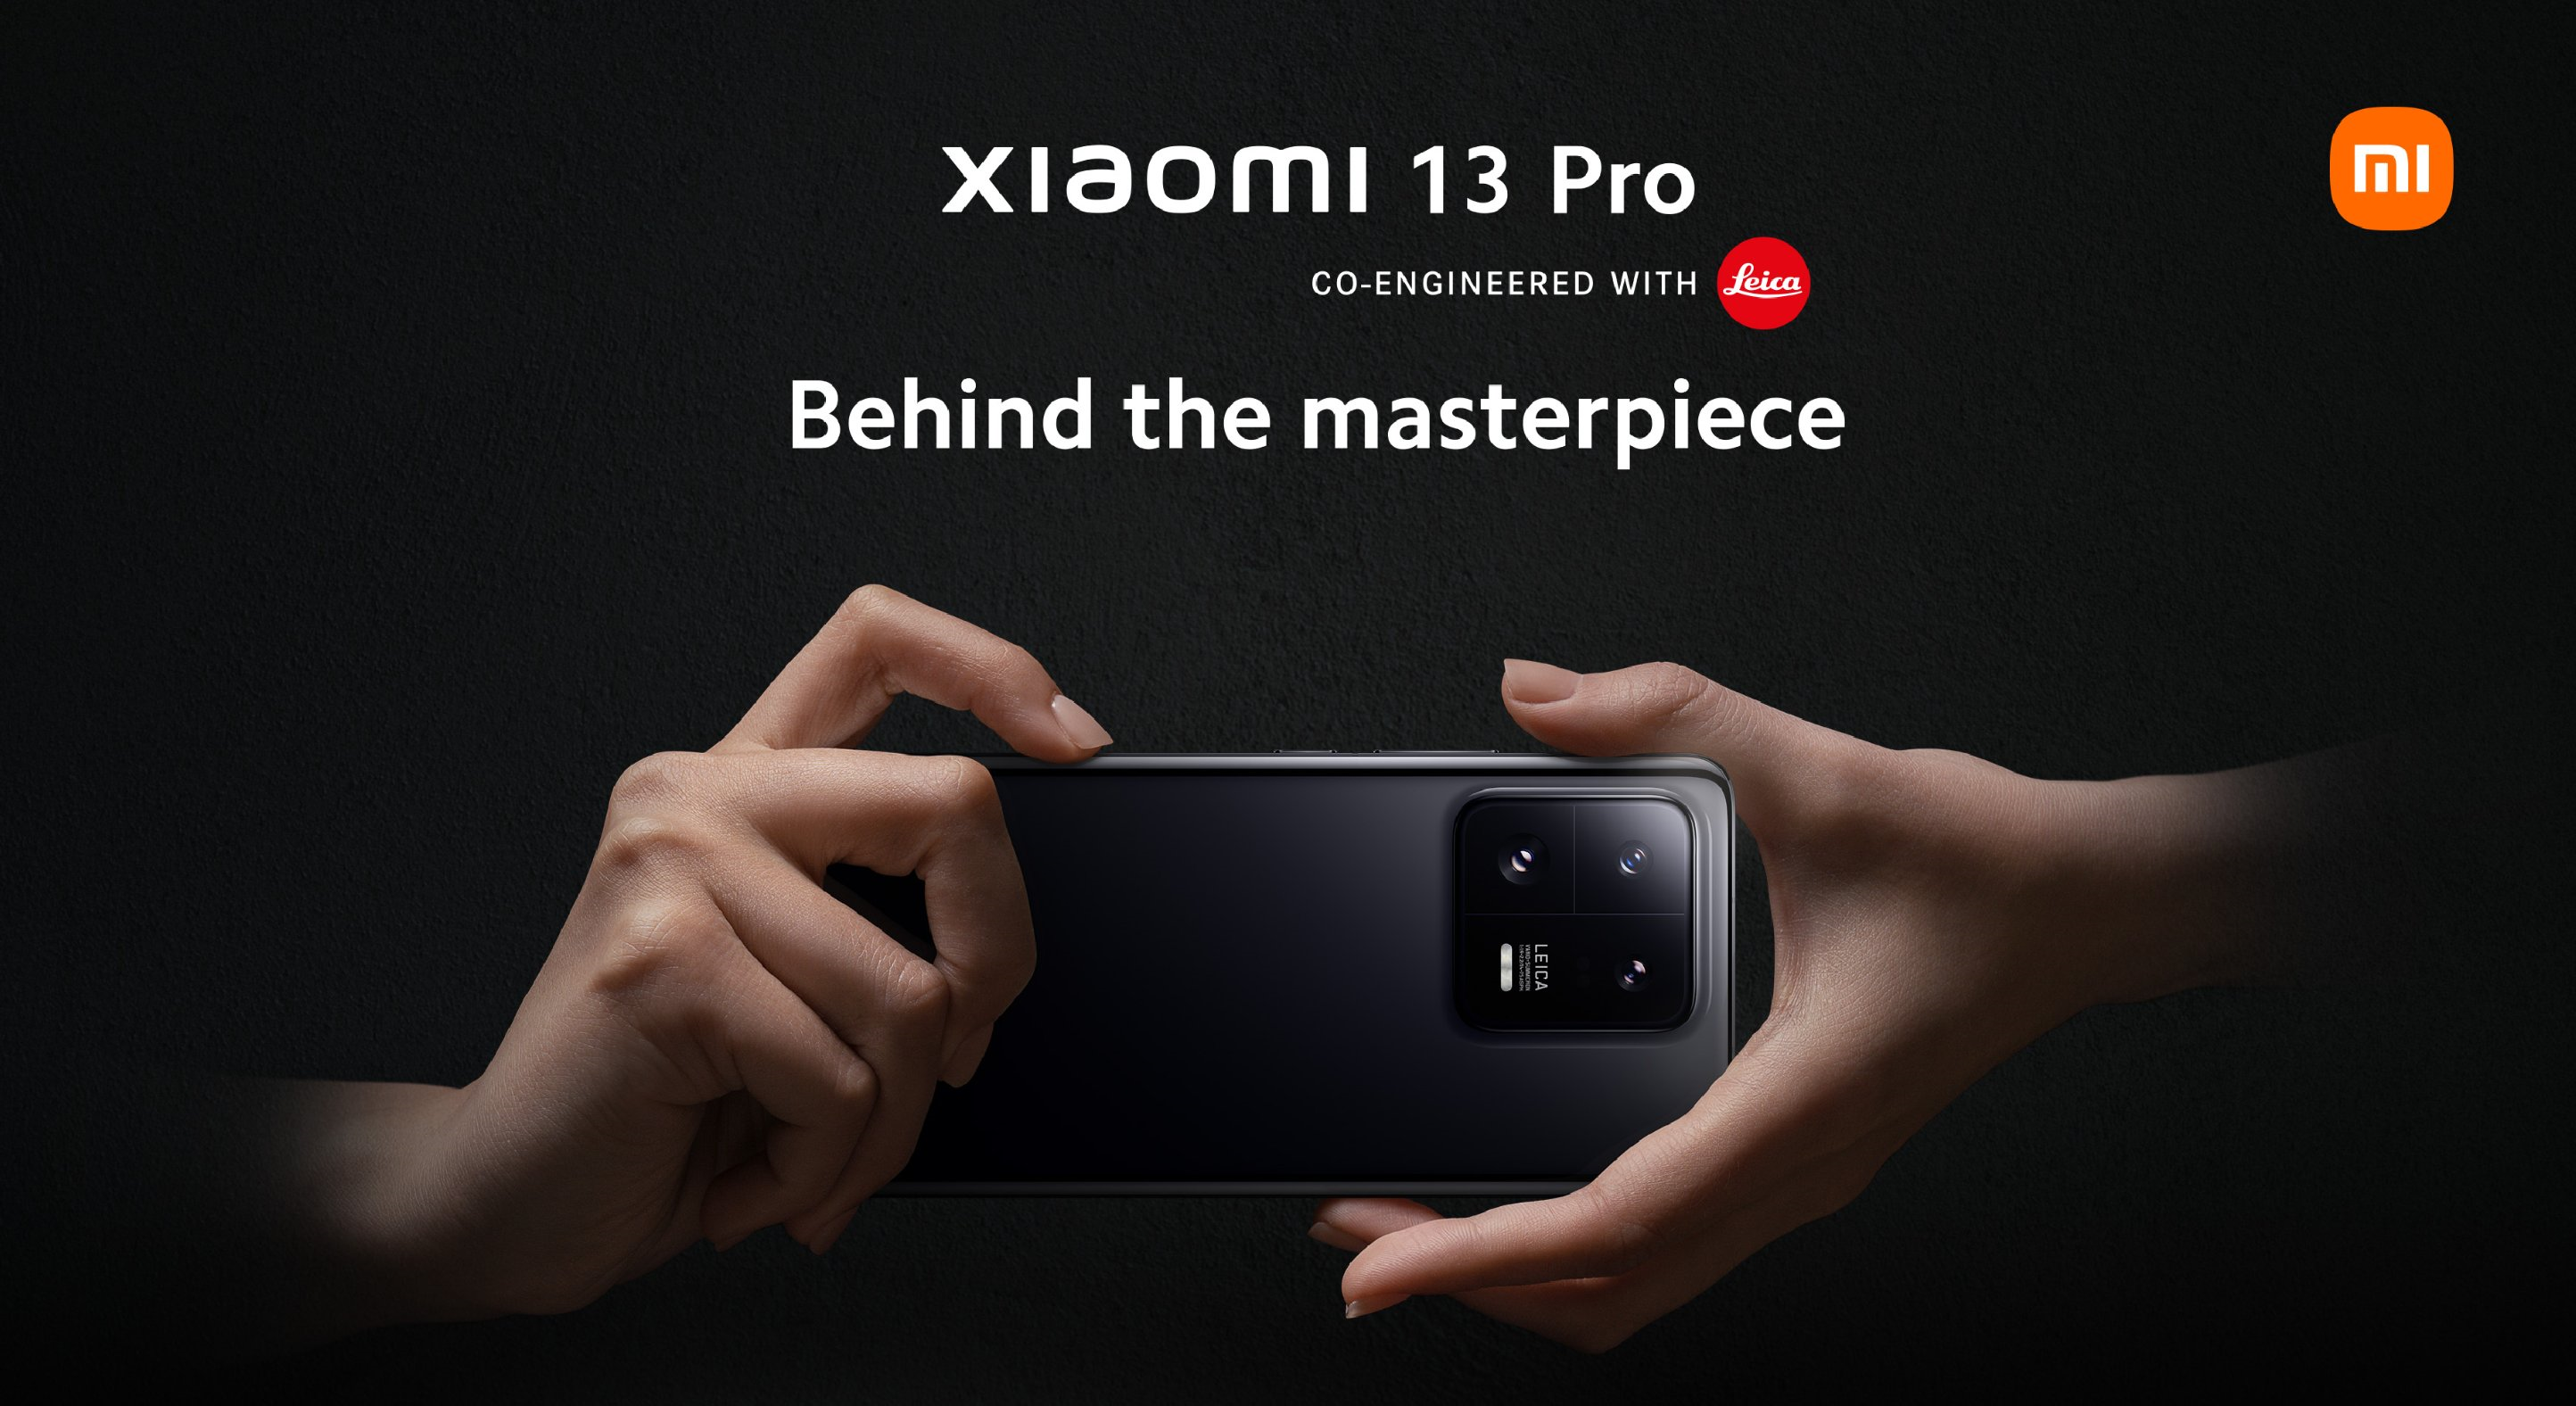 Snapdragon 8 Gen 2, pantalla 3K 120Hz, tres cámaras Leica de 50MP con soporte UHD 8K y precio IP68 desde 1299 euros - Xiaomi 13 Pro presentado